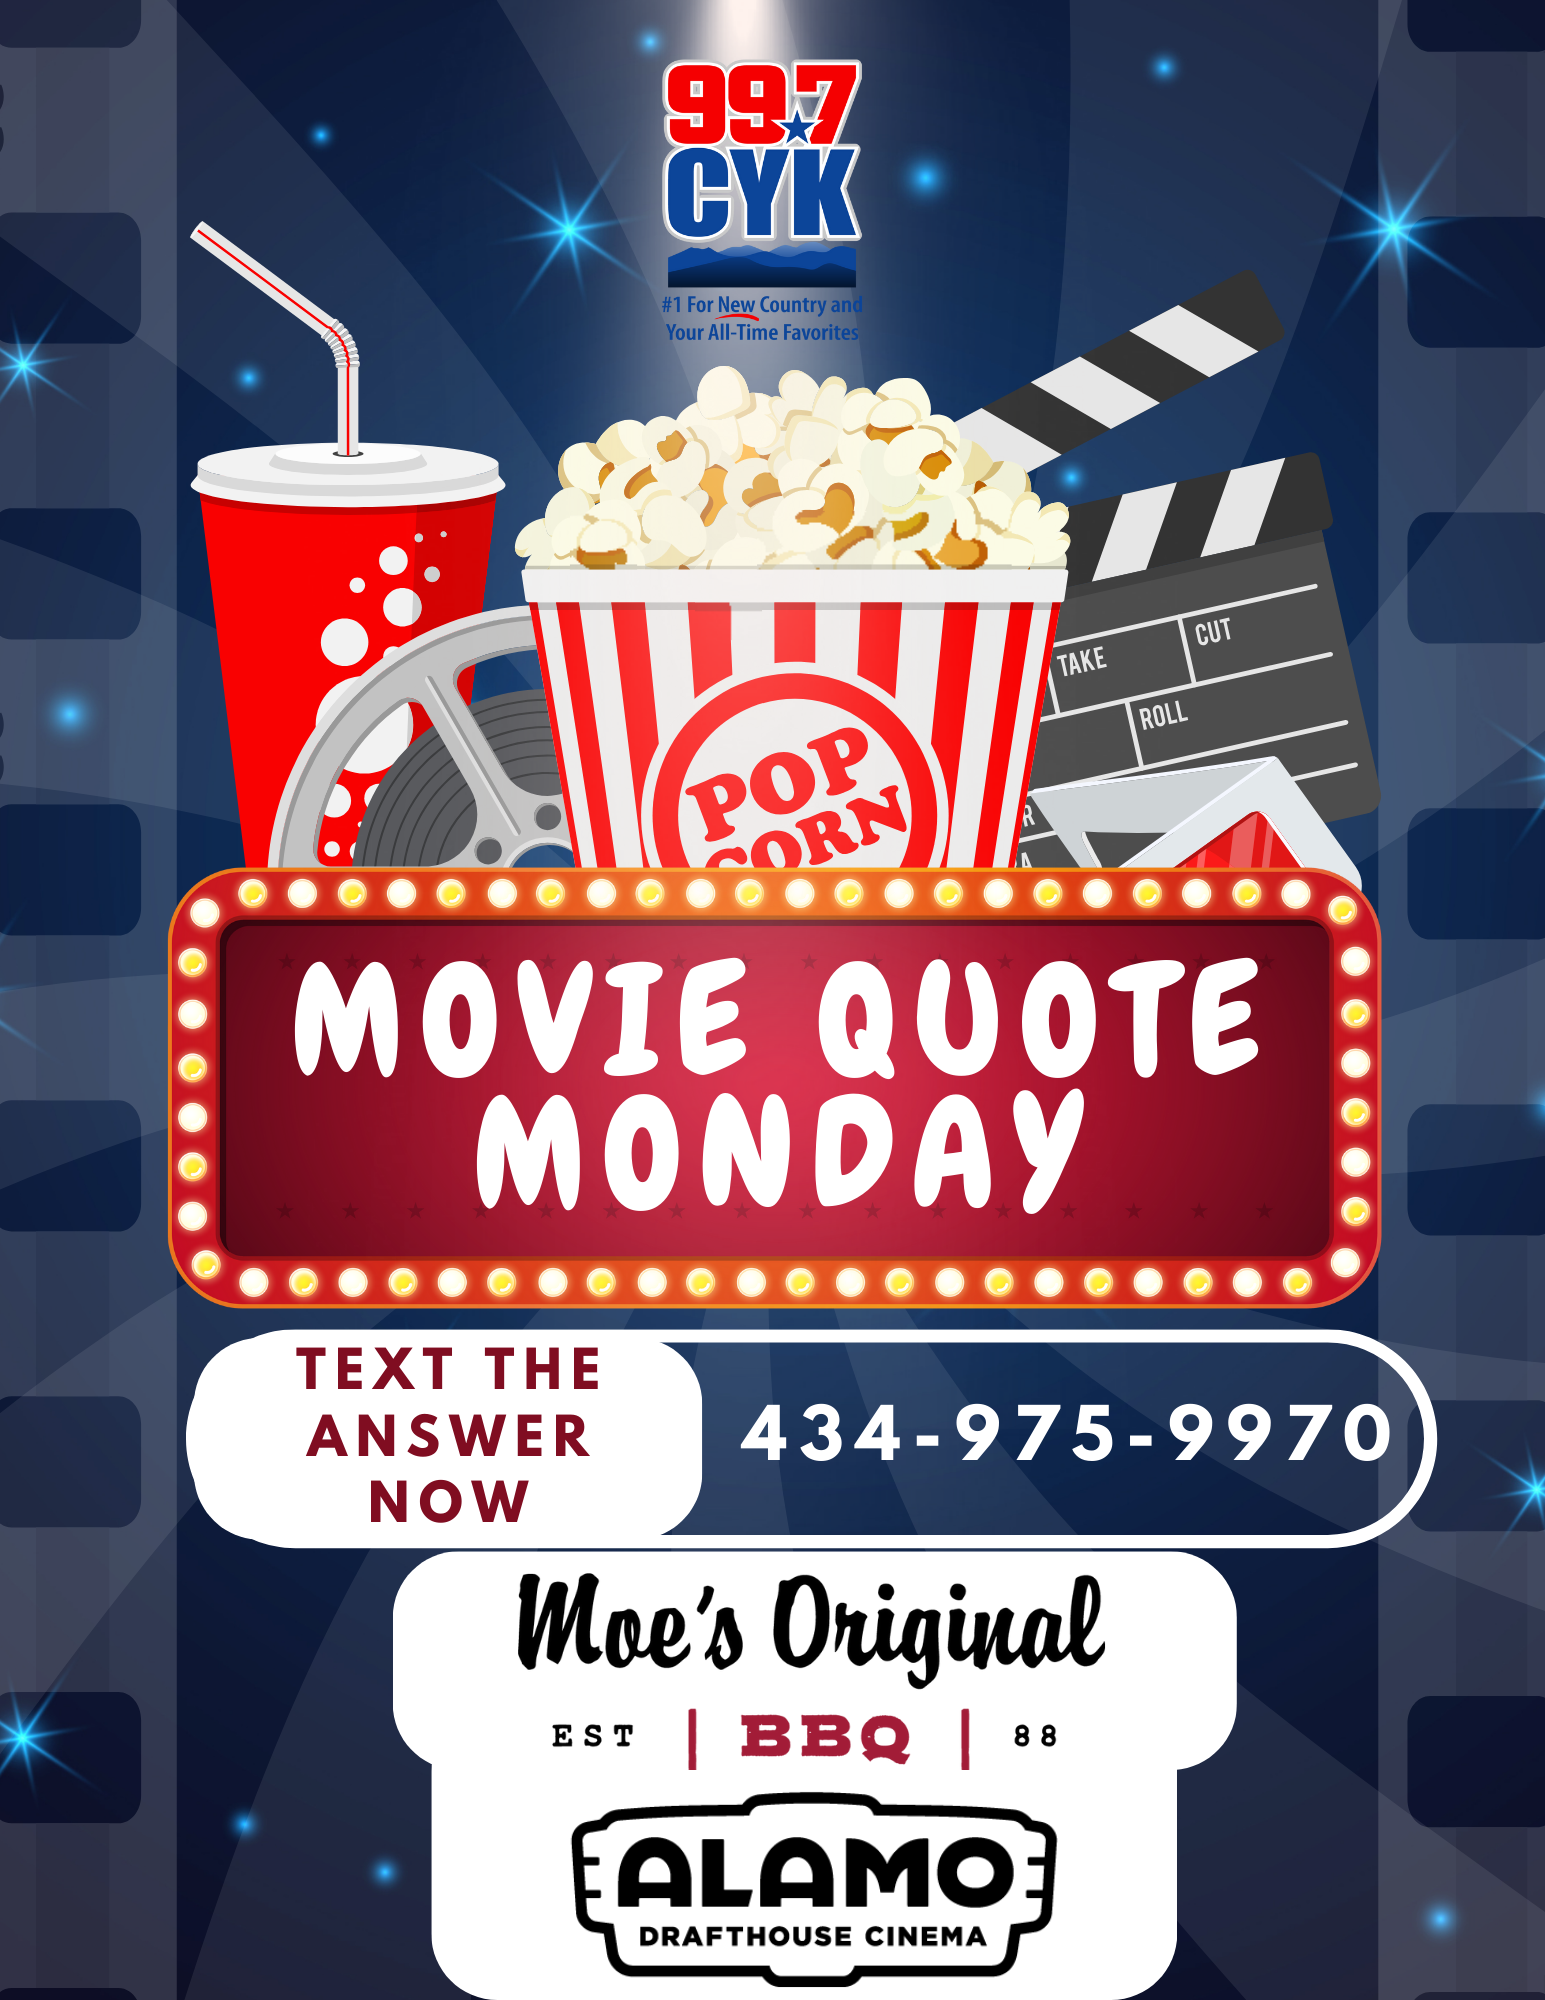 Movie Quote Monday